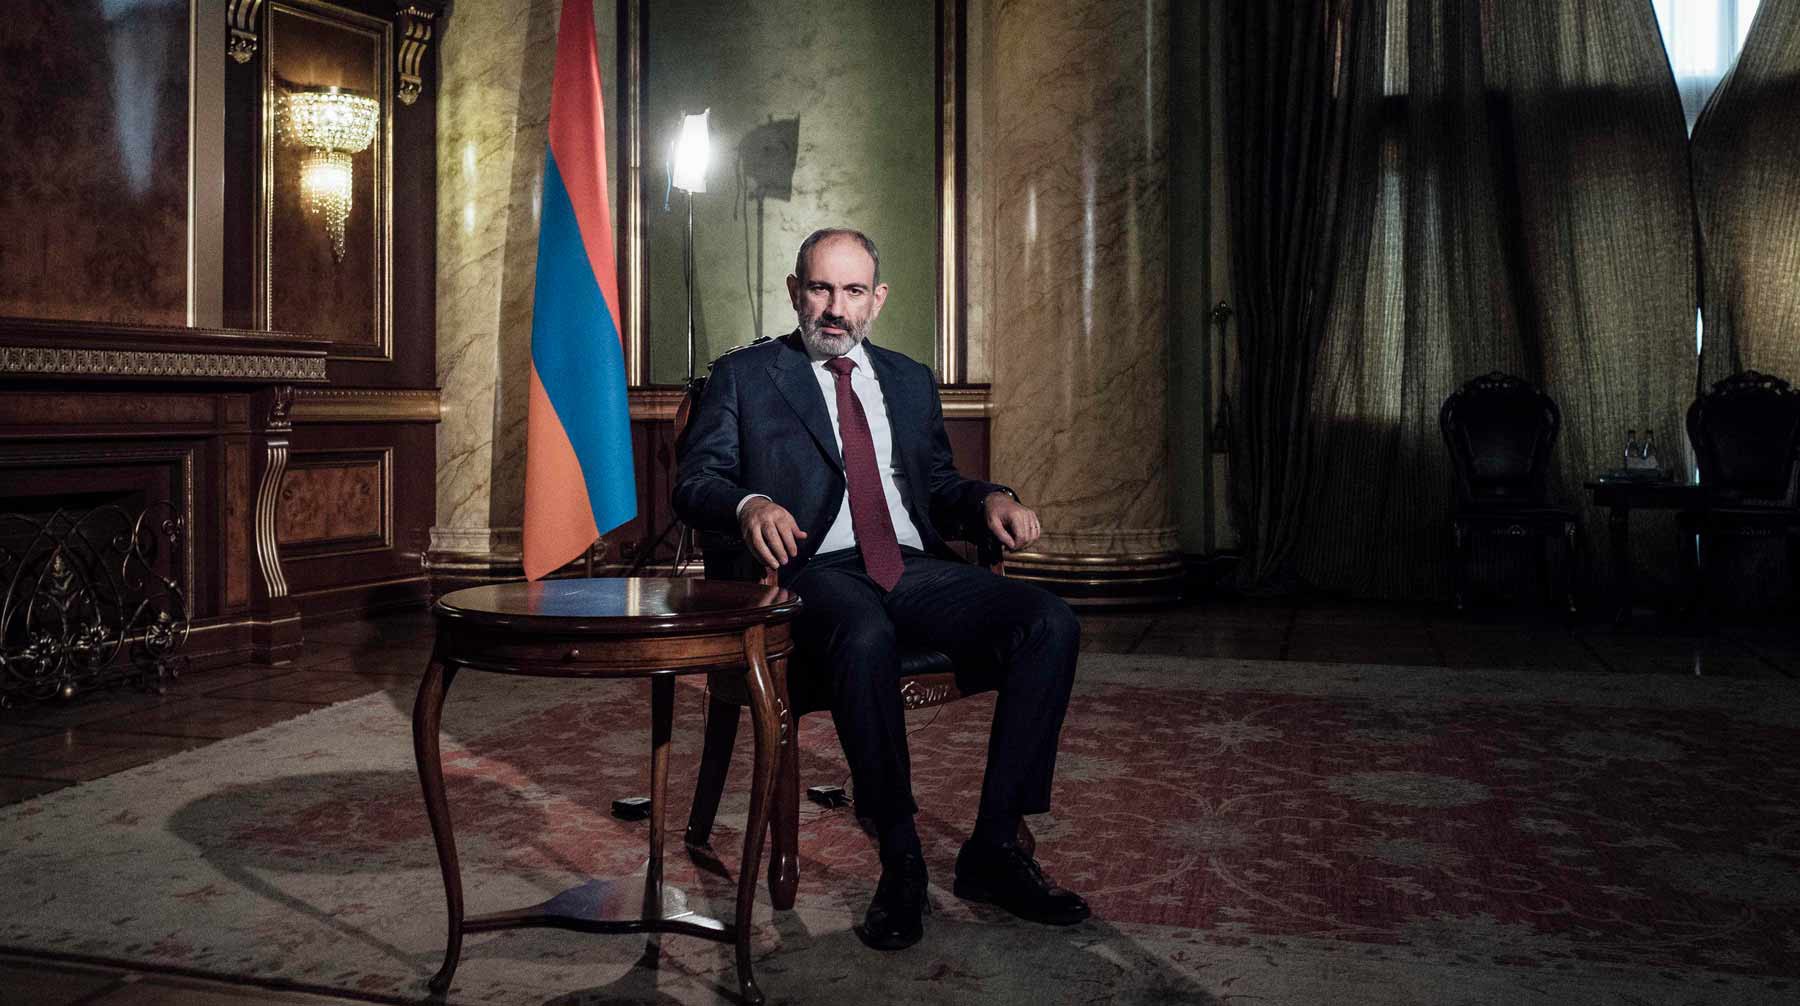 Dailystorm - «Он предатель»: в Ереване протестующие вновь требуют отставки Пашиняна